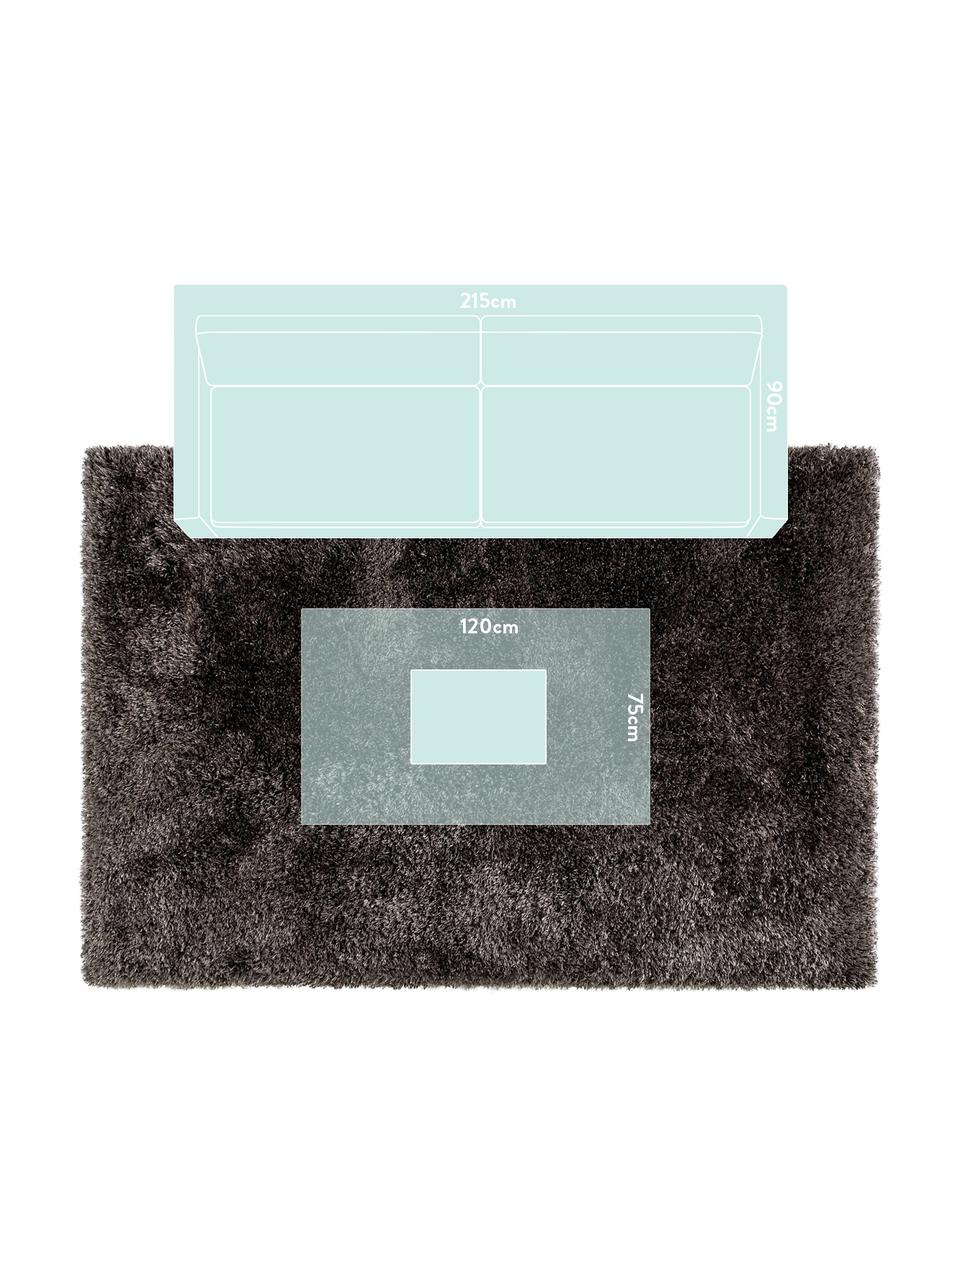 Glänzender Hochflor-Teppich Lea in Anthrazit, 50% Polyester, 50% Polypropylen, Anthrazit, B 300 x L 400 cm (Größe XL)